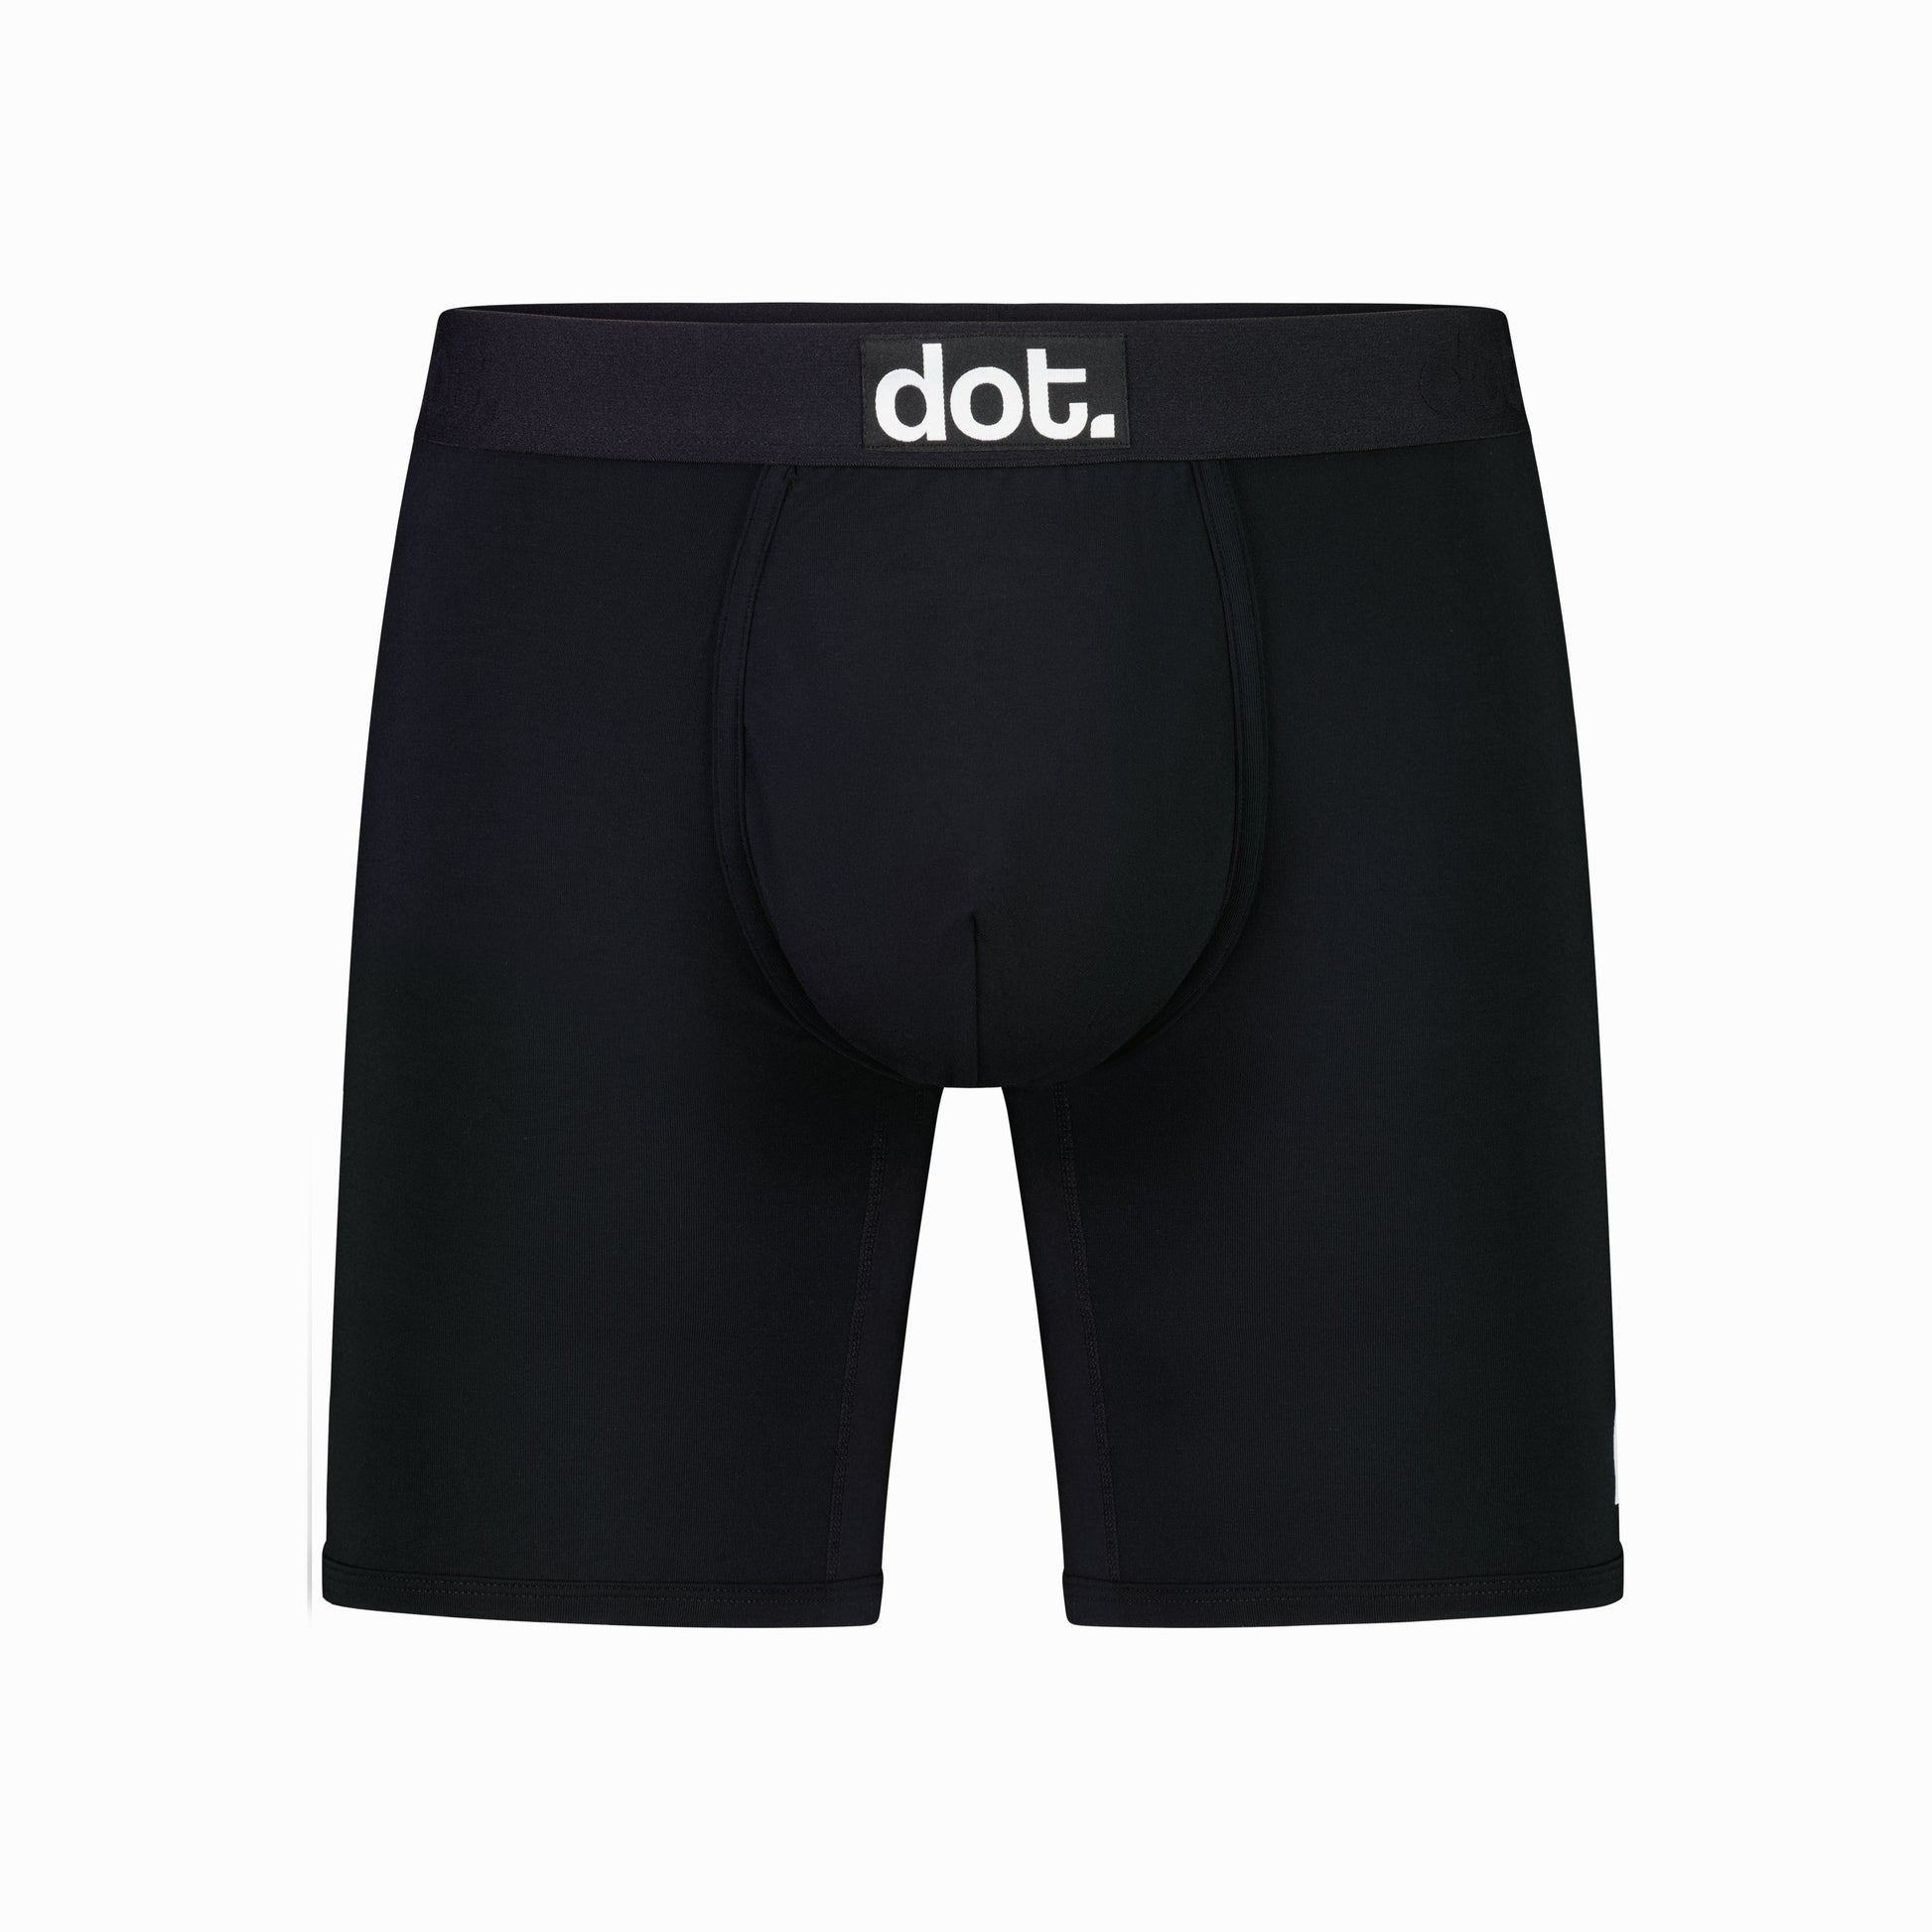 dot. underwear – dotunderwear